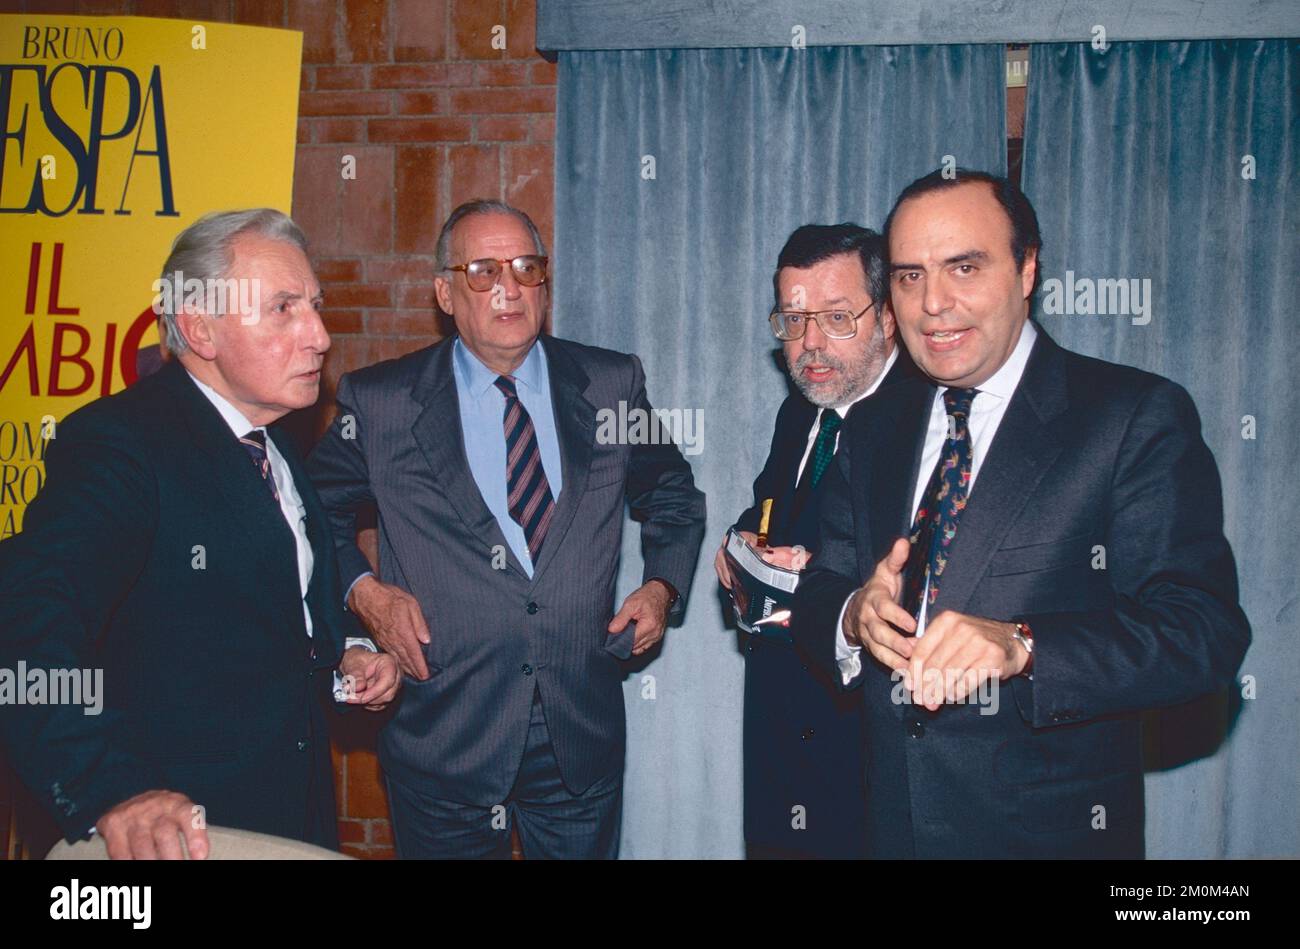 Italian prosecutor Giulio Catelani, politicians Alfredo Biondi and Giovanni Maria Flick, and journalist Bruno Vespa at a book presentation, Rome, Italy 1994 Stock Photo